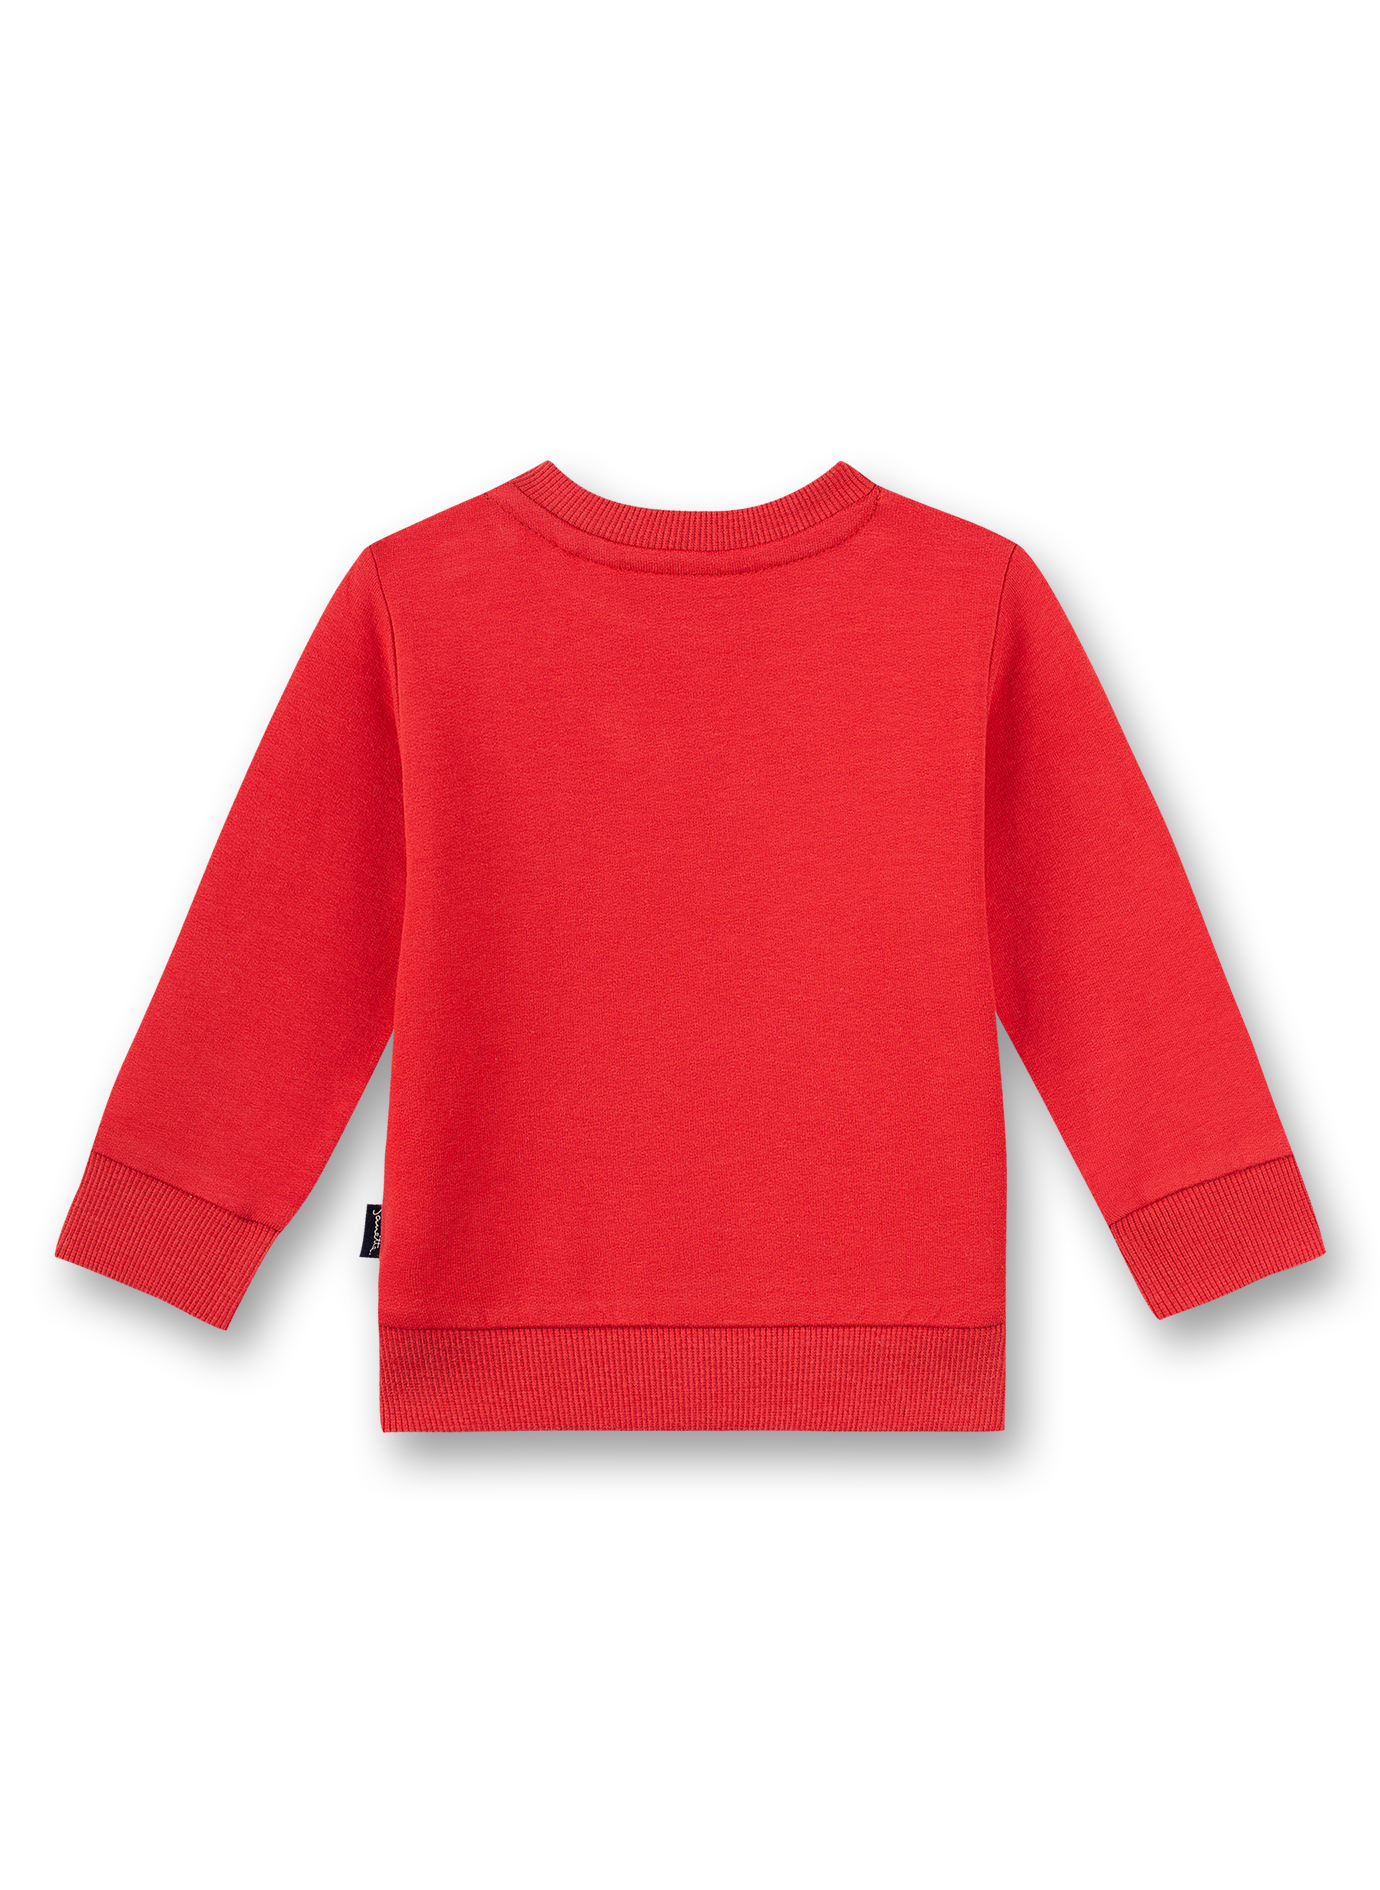 Jungen-Sweatshirt Rot Inter Galactic